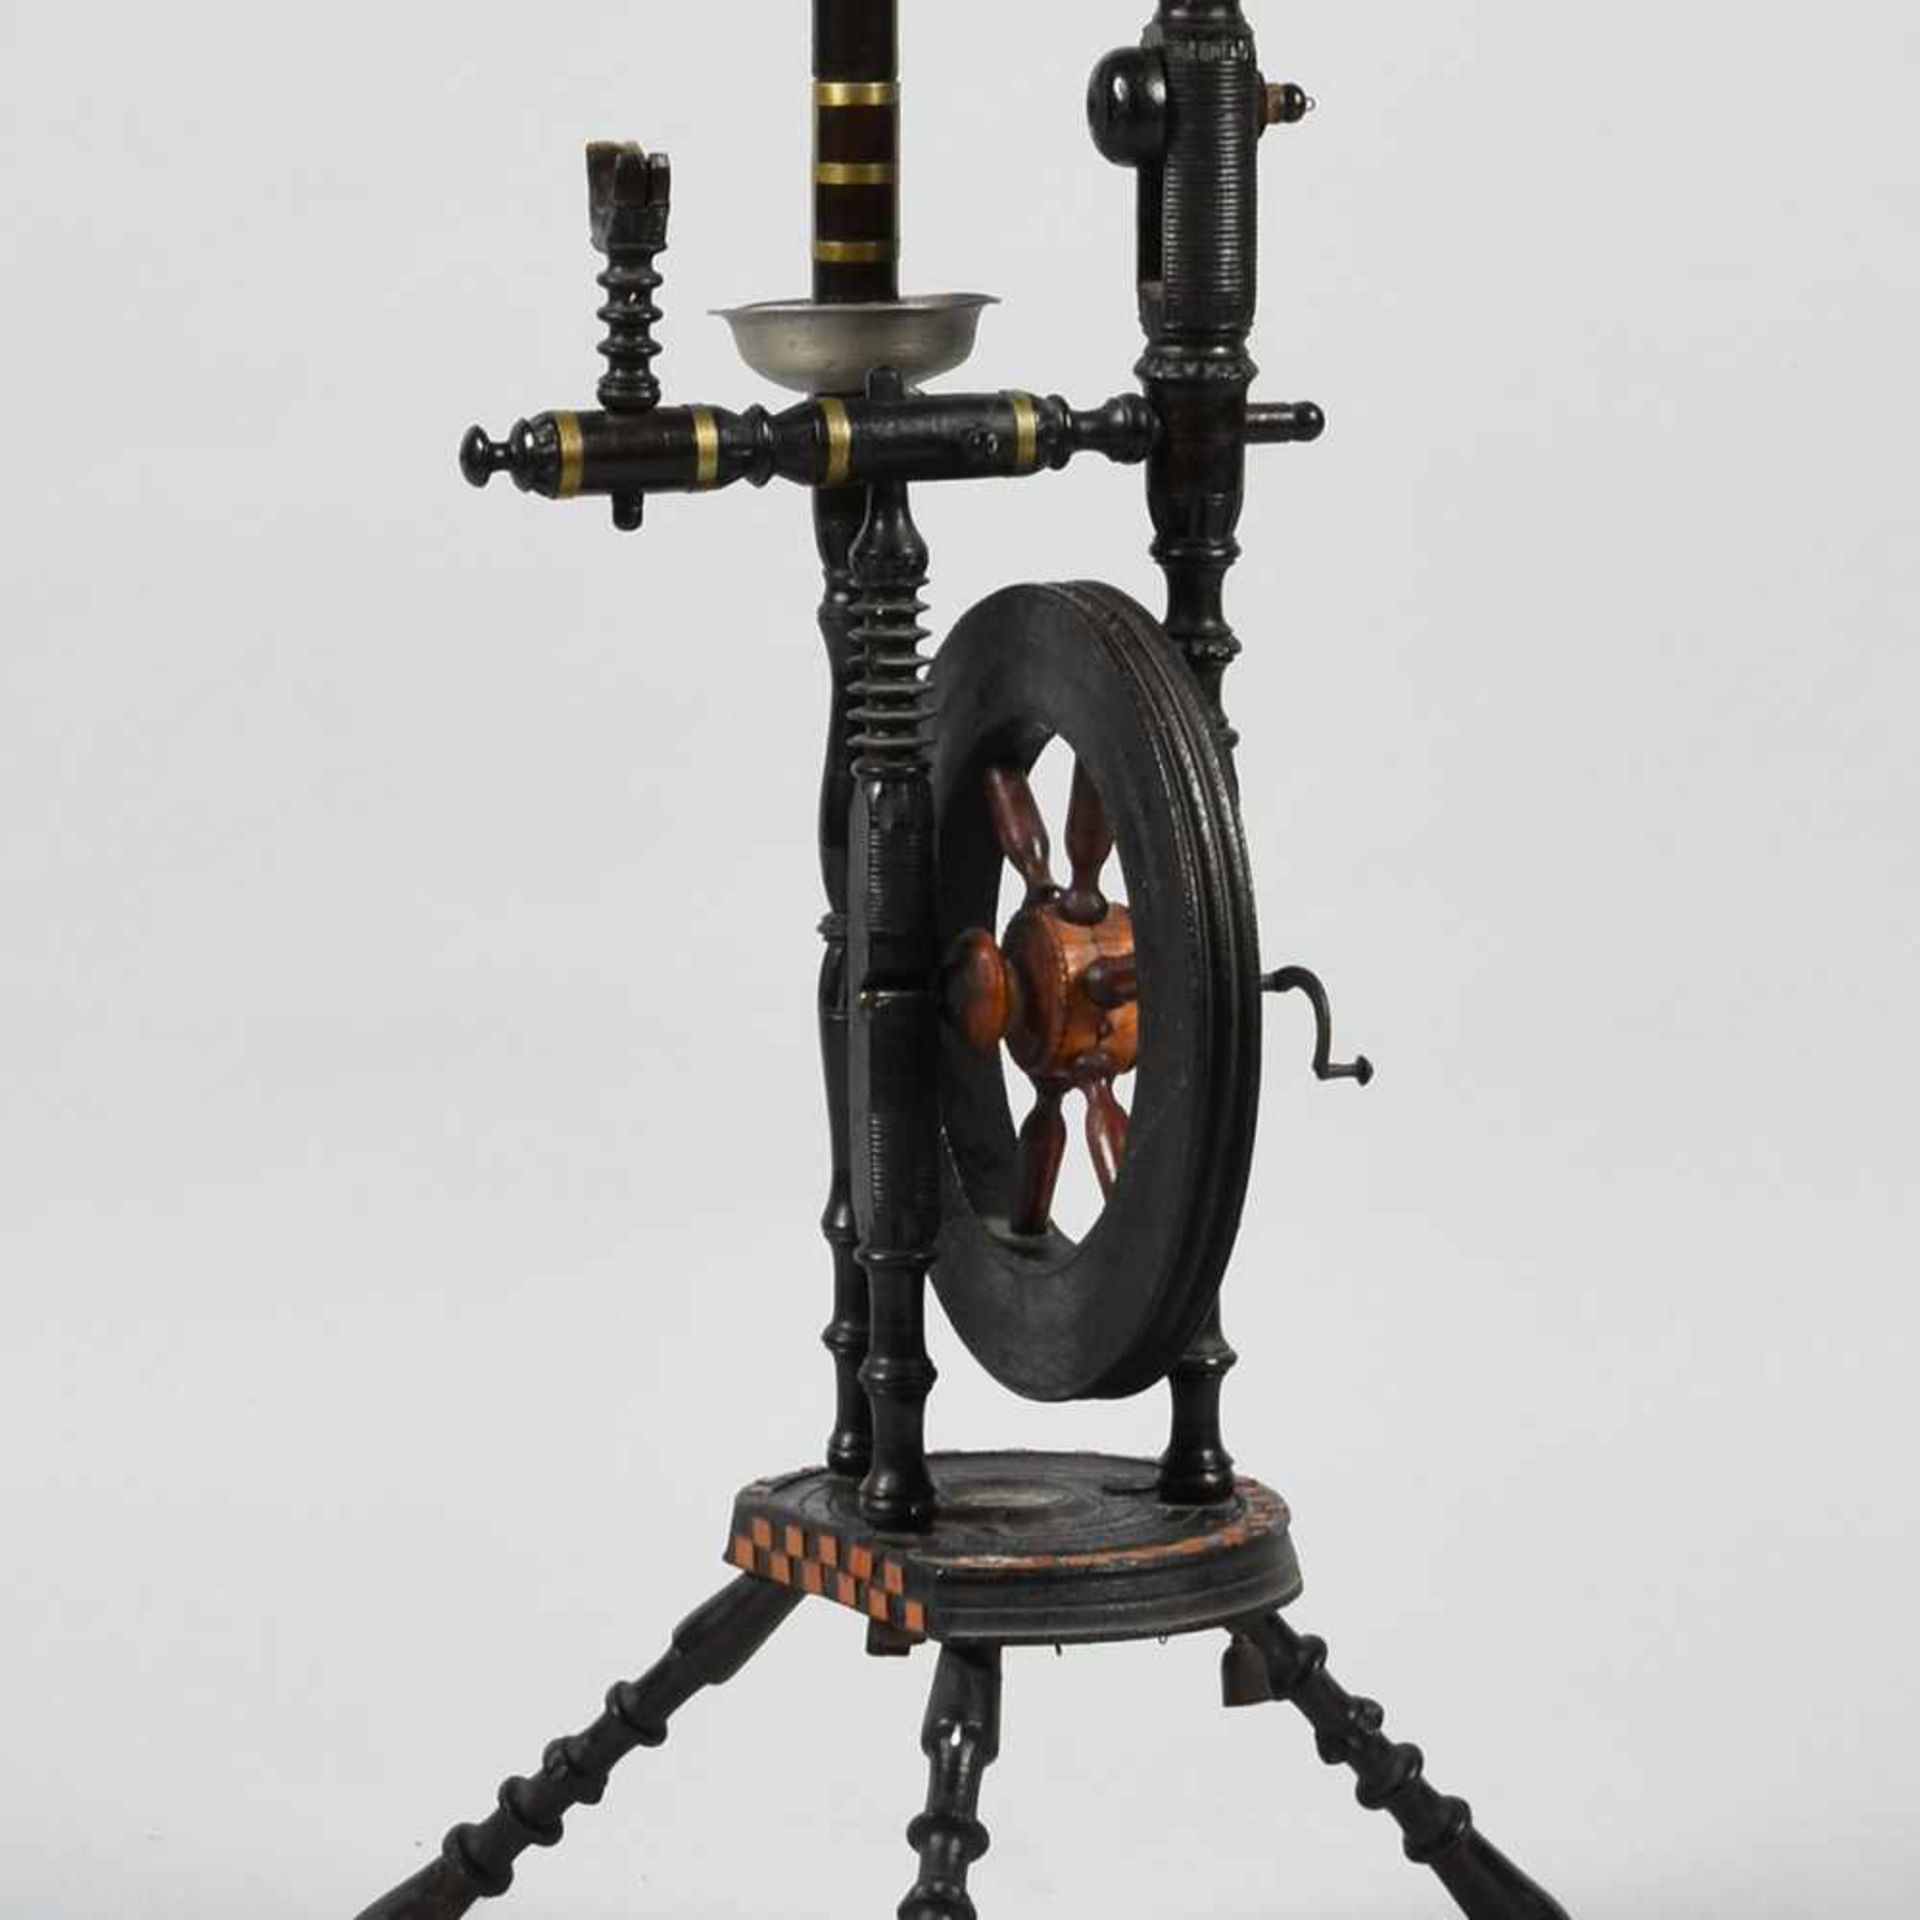 Spinnrad Holz, gedrechseltes Gestell, schwarz lackiert, dekorative Ausführung mit Messingzierbändern